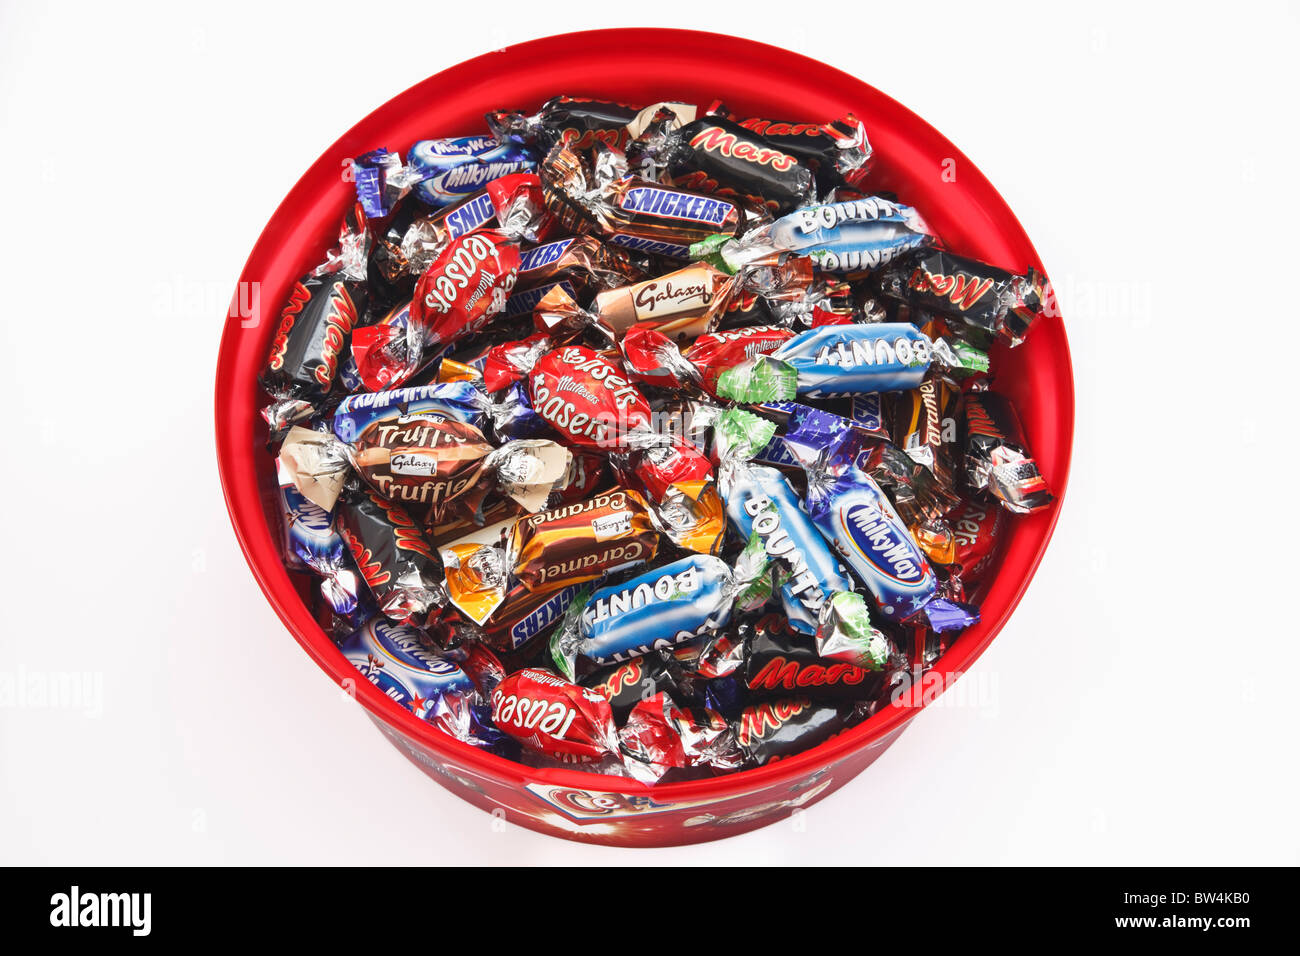 Contenitore di plastica piena di celebrazioni dei cioccolatini. Marte, Malteasers, la Via Lattea, Bounty, galassia, Snickers da sopra il bianco. Regno Unito Foto Stock